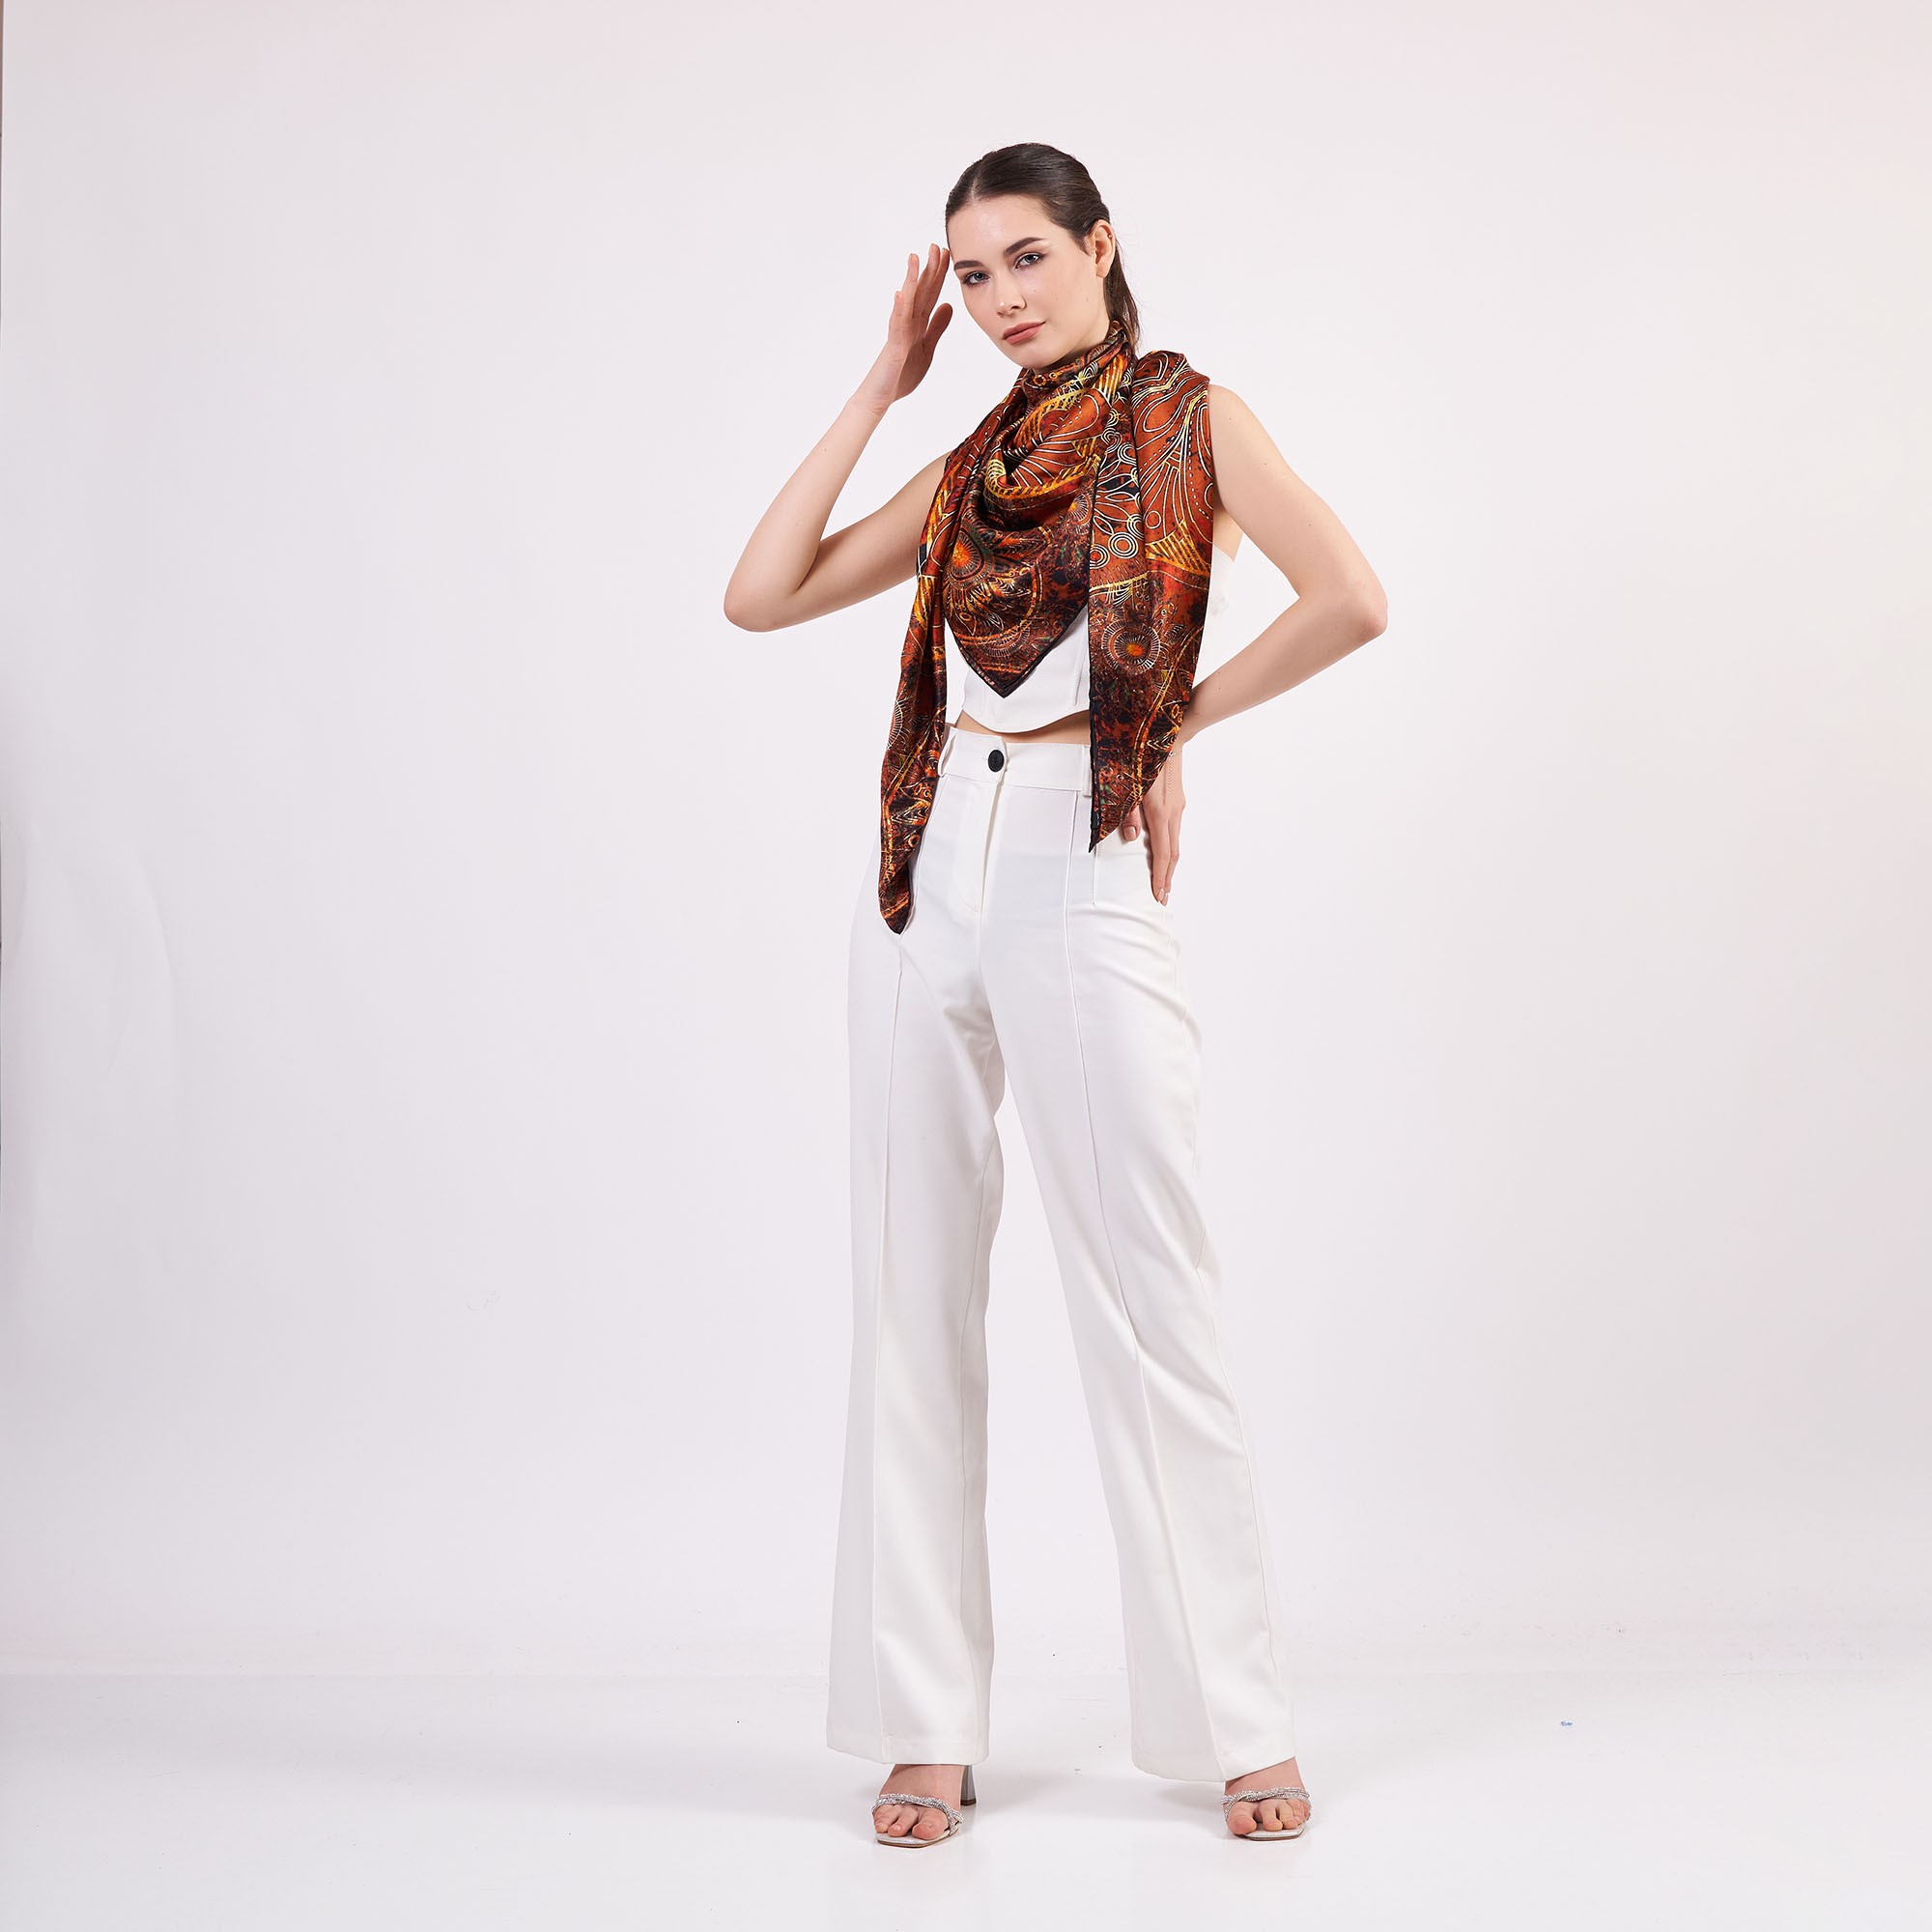 100% Silk Shawl Scarf | Mandala Pattern | 140cm | Brown | Nomads Felt